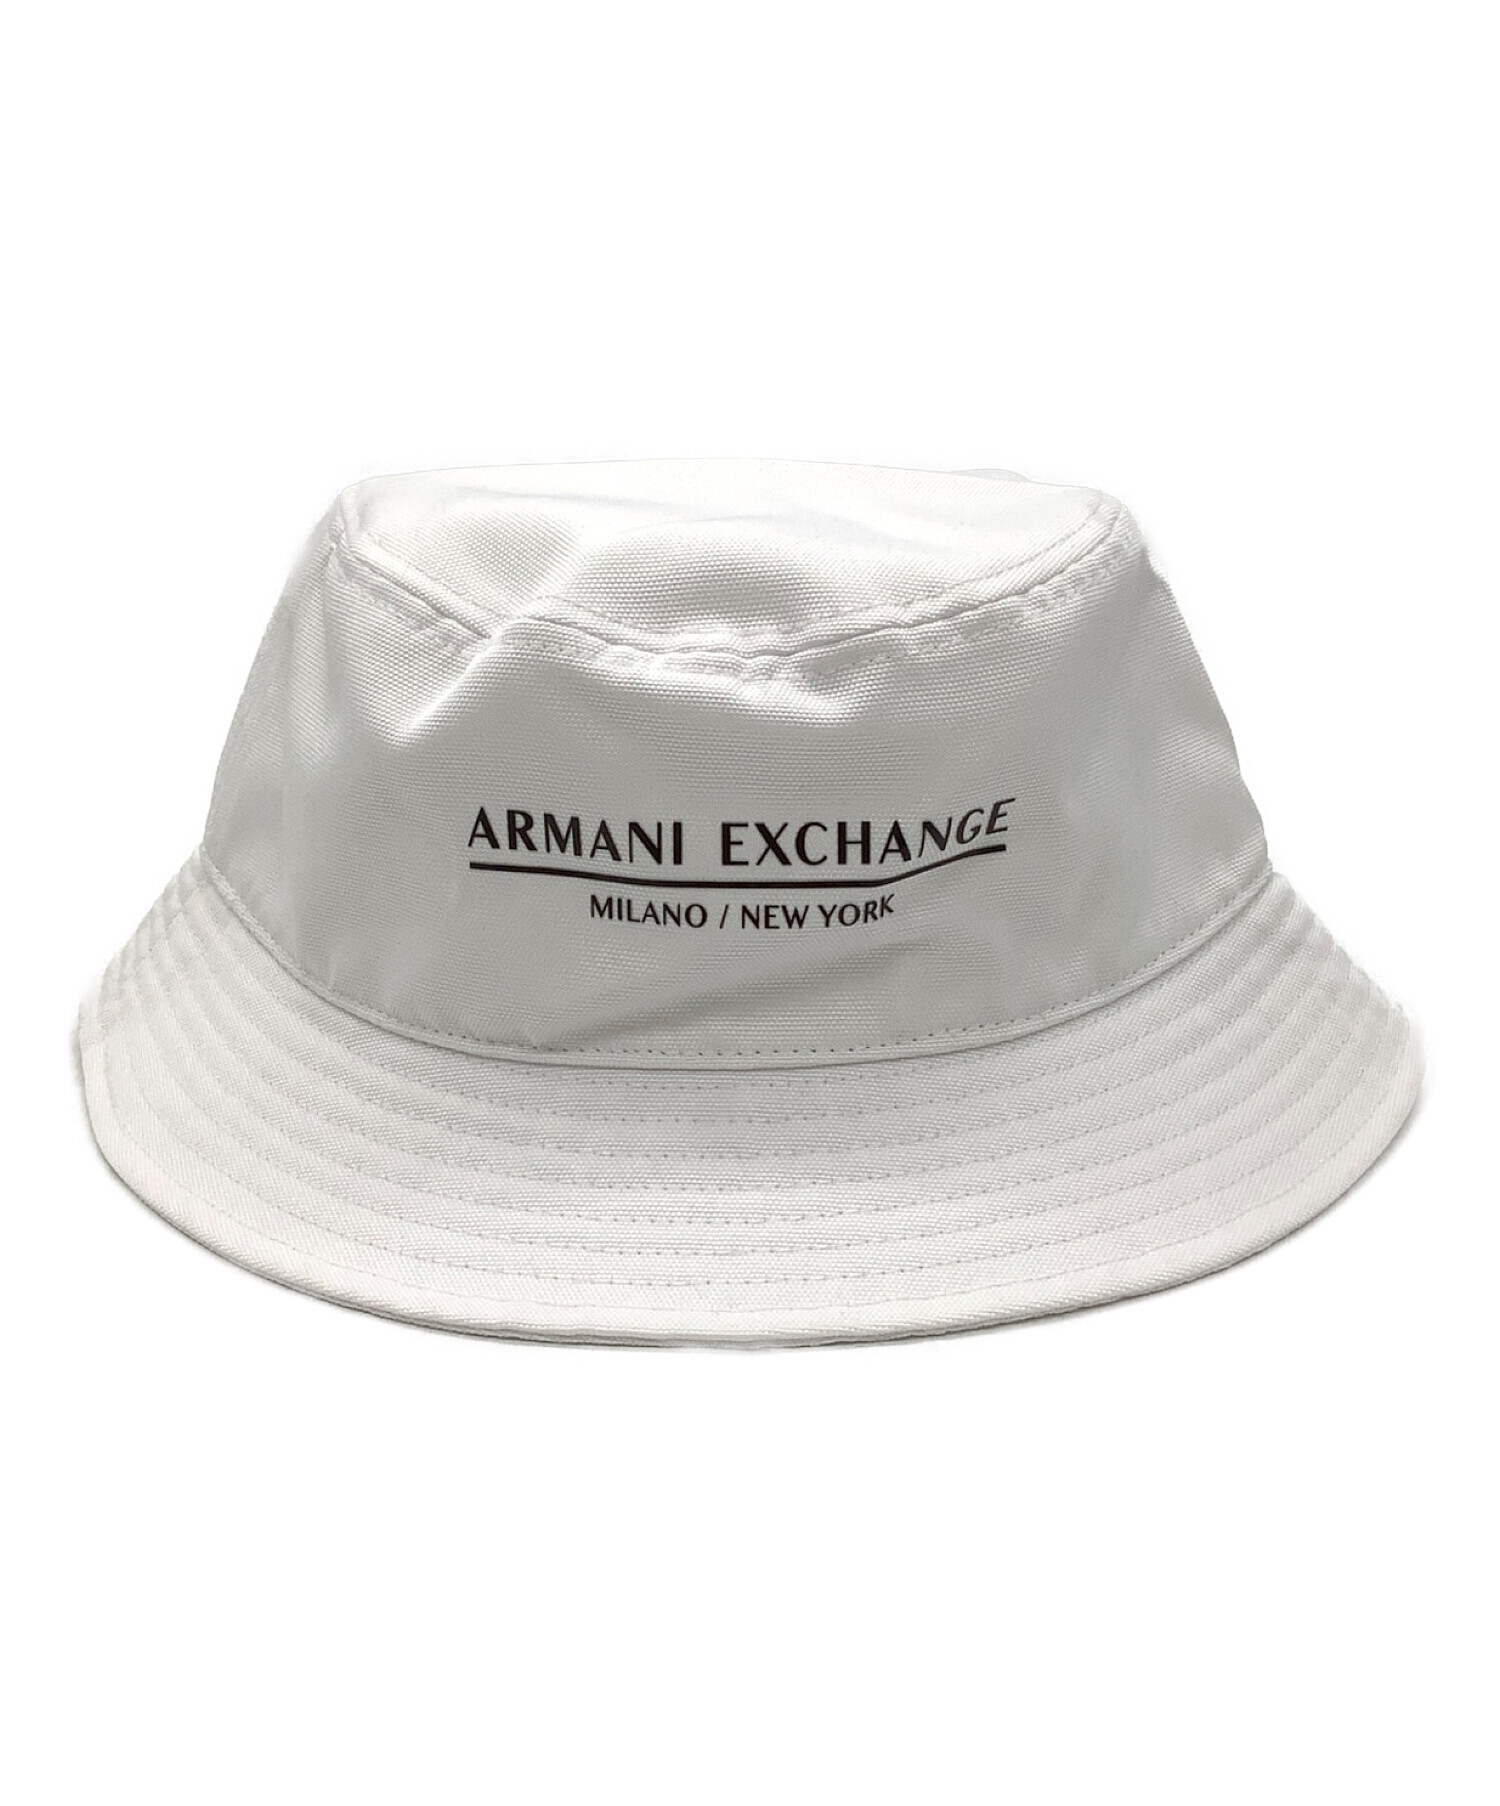 ARMANI EXCHANGE (アルマーニ エクスチェンジ) バケットハット 未使用品